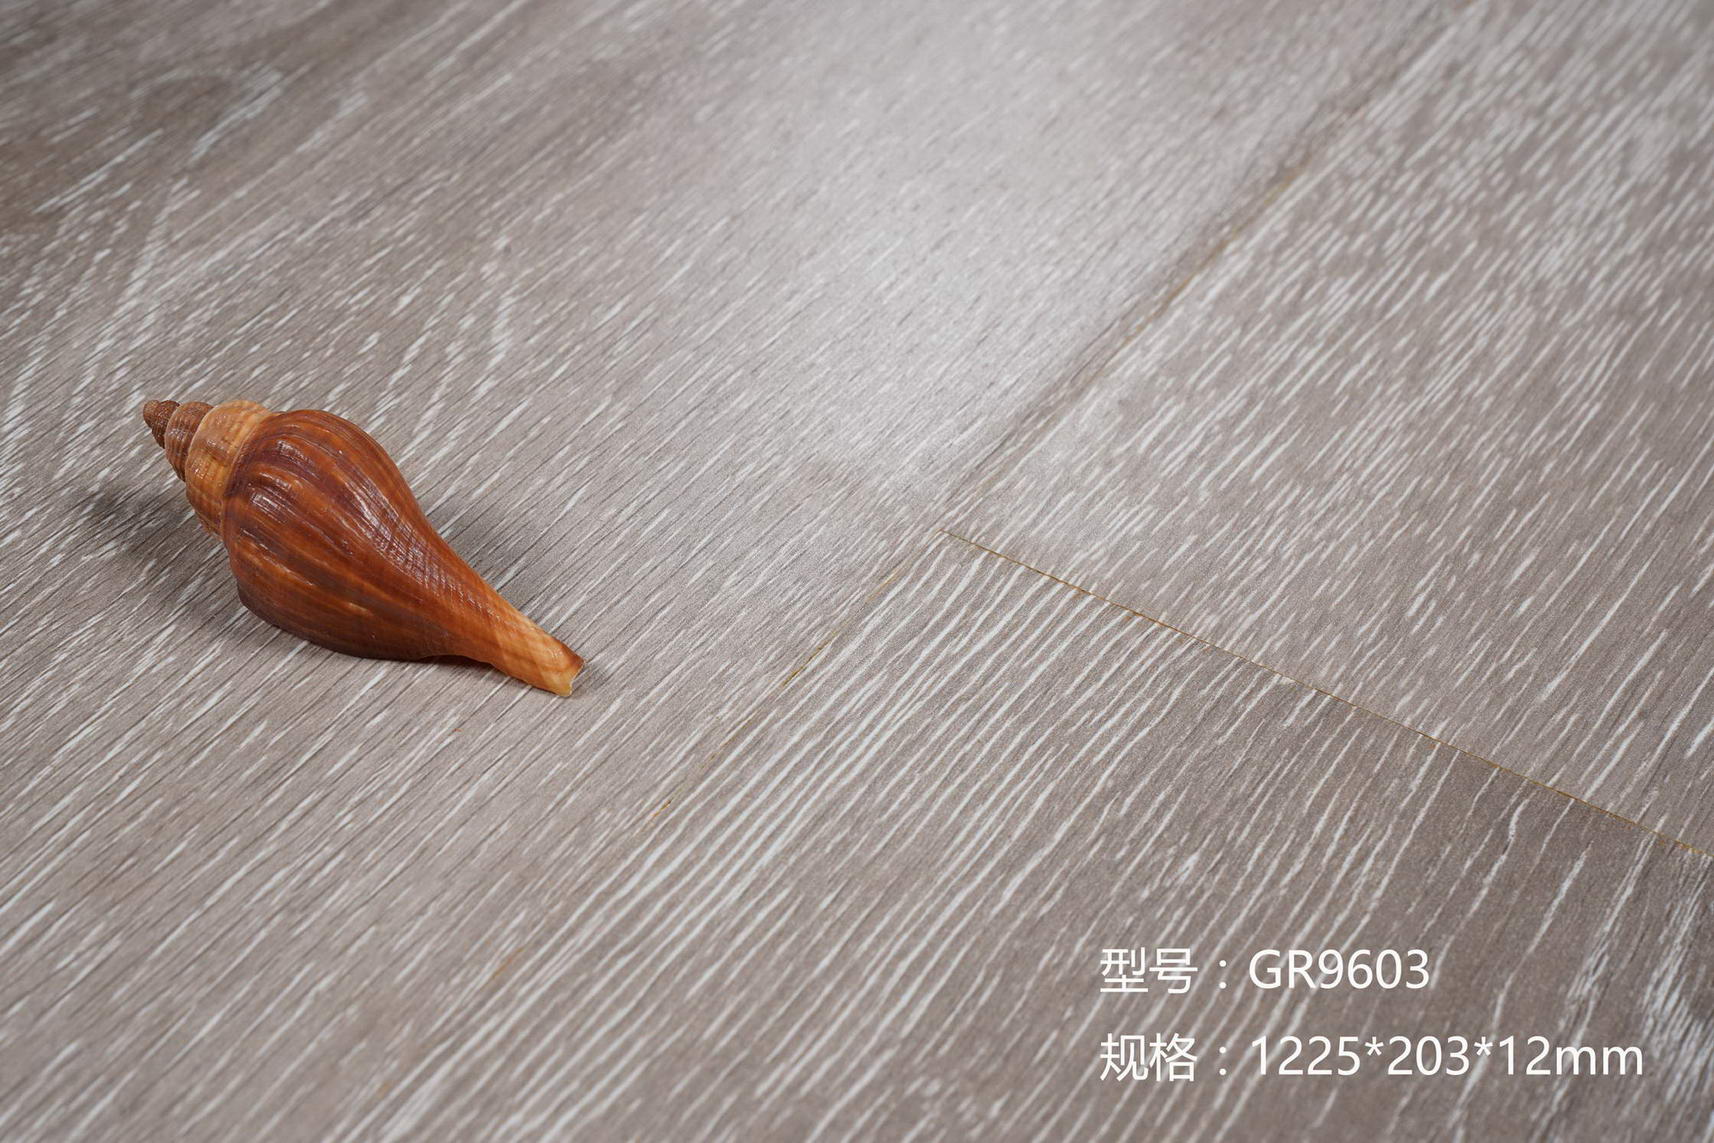 高清耐磨花色纸 海拉尔幻影拉丝系列 E1级大豆环保用胶 强化复合地板 绿色选材 冠然地板4